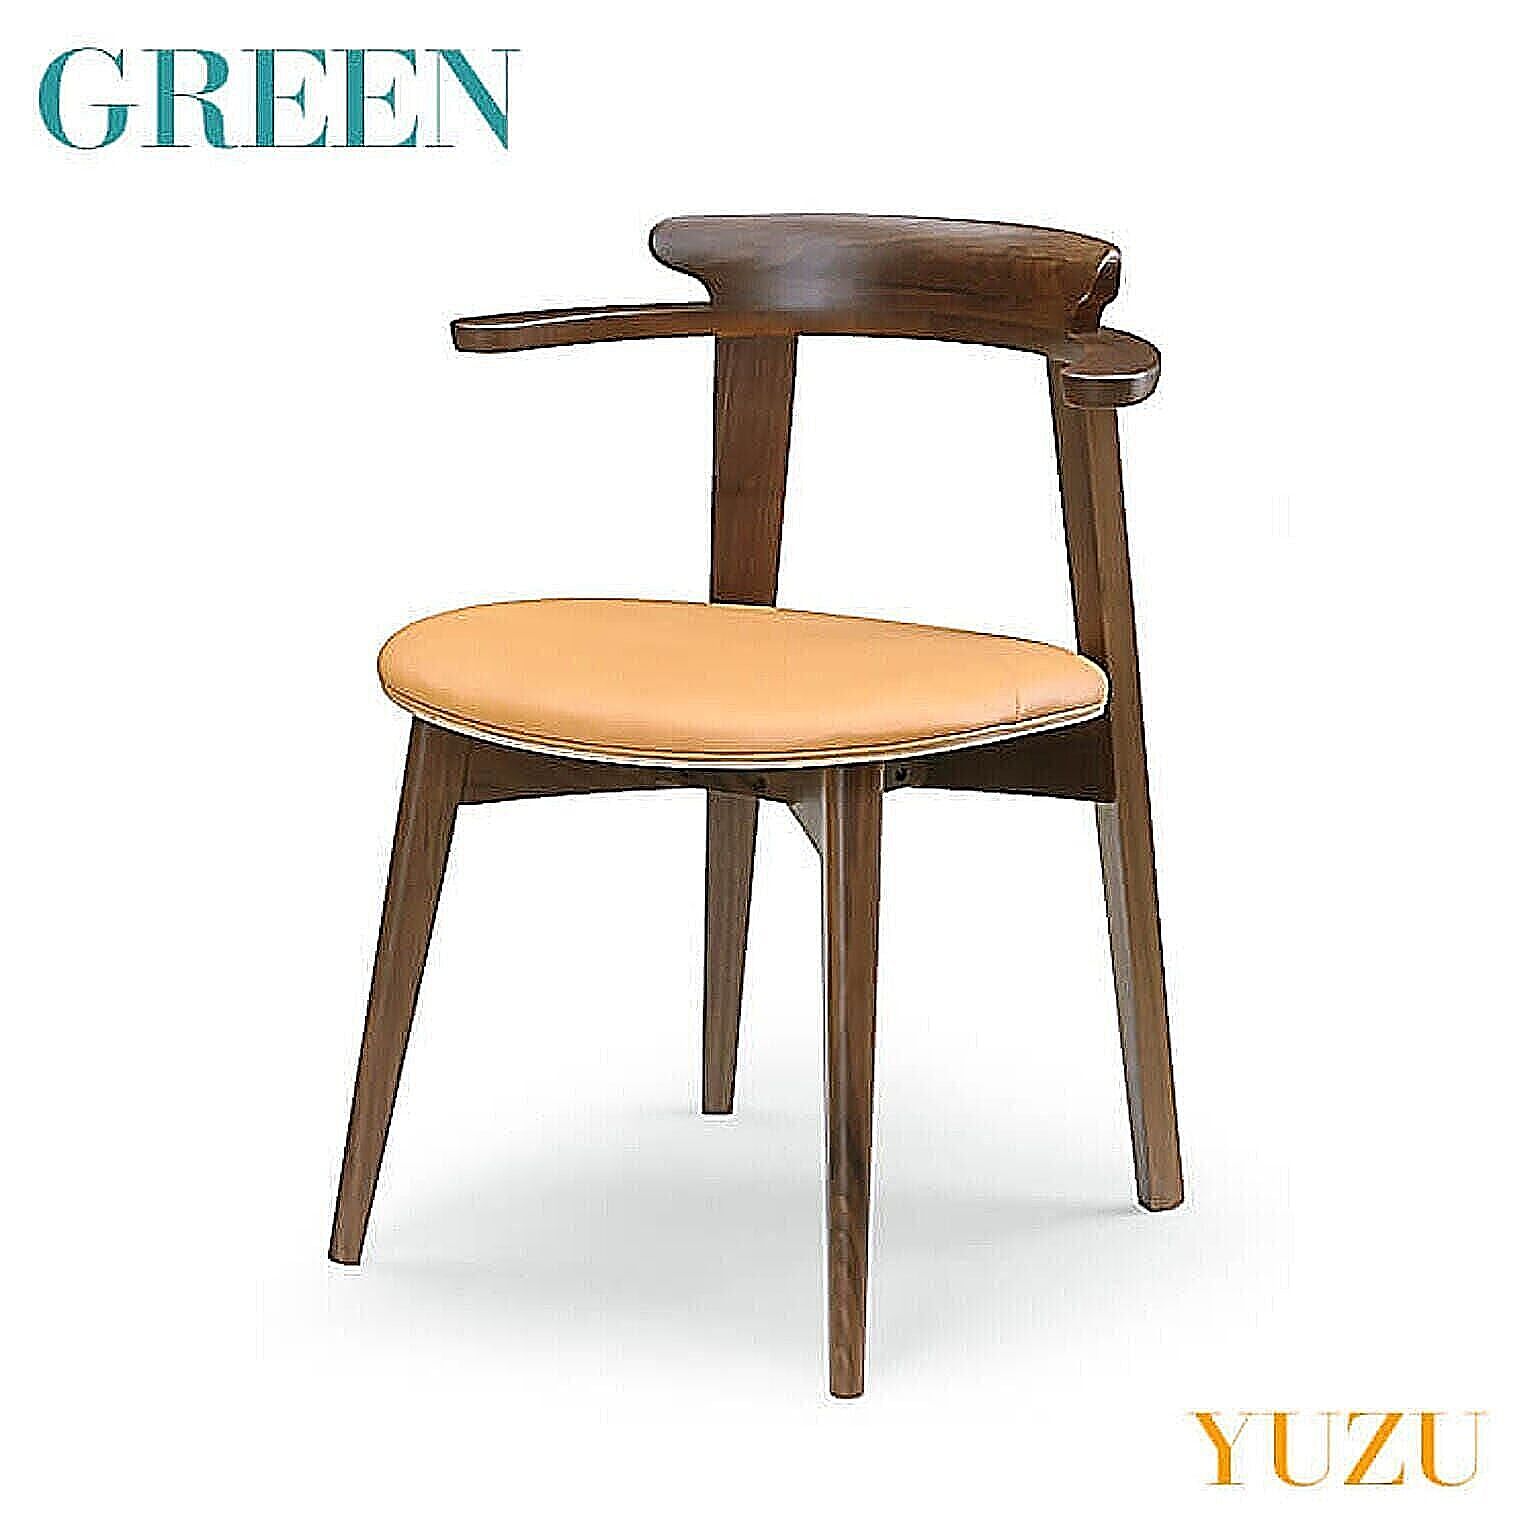 GREEN YUZU チェア D ウォールナット Y-001 リビング ダイニング イス 椅子 セラウッド塗装 グリーン ユズ 送料無料 在庫限リニューアル予定